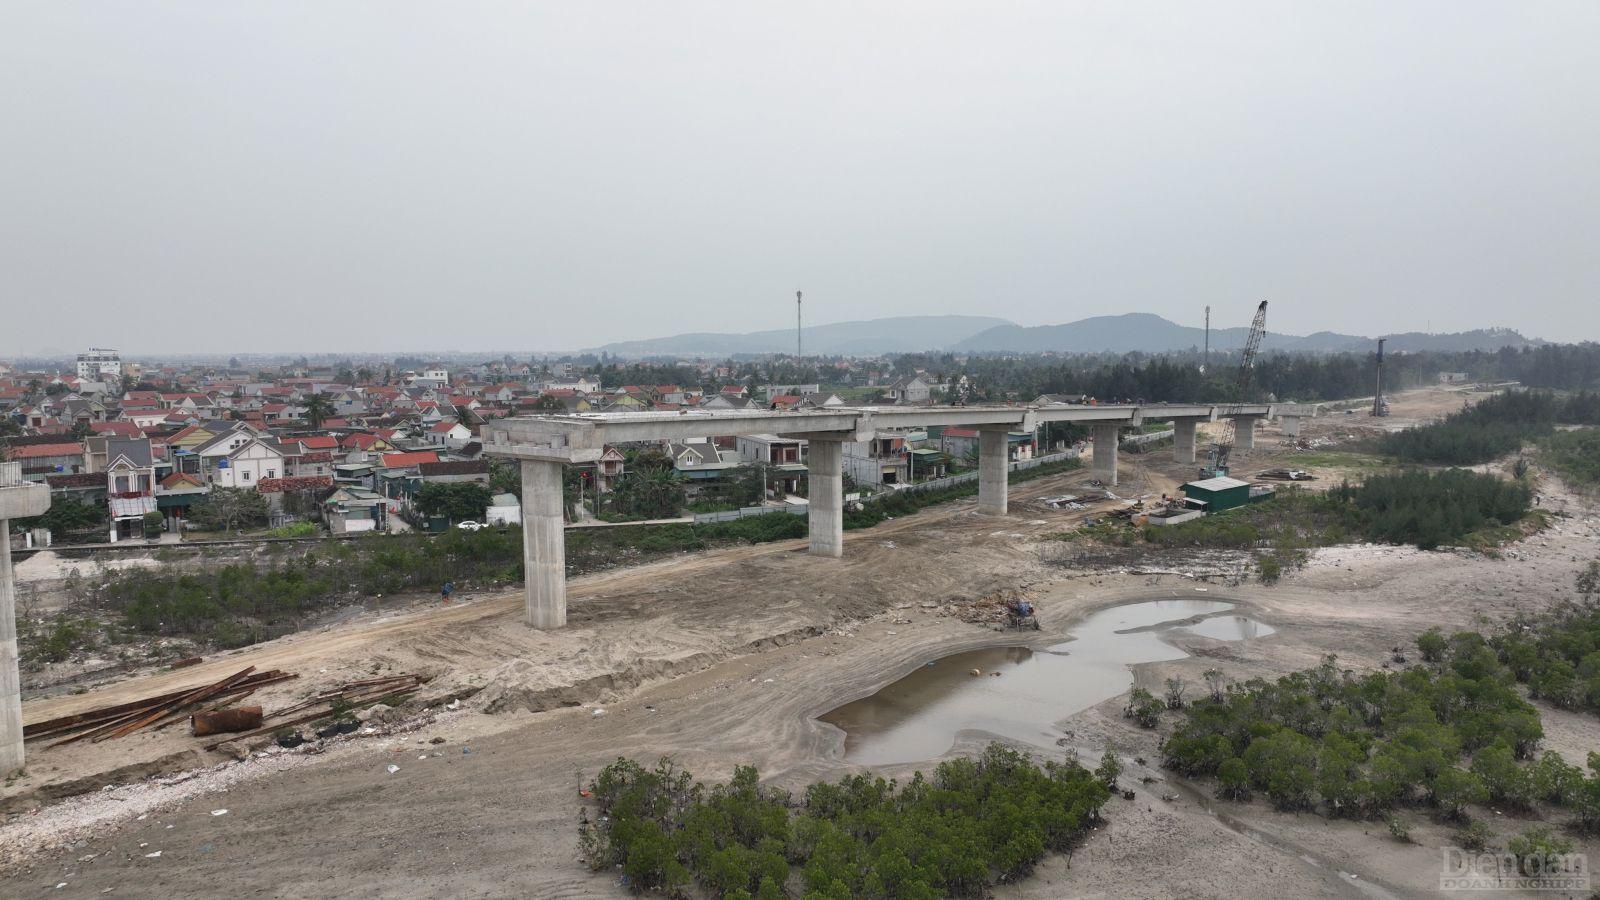 Cùng với cao tốc Bắc - Nam phía Đông, hiện ở huyện Diễn Châu còn có hệ thống đường ven biển đi qua, tạo ra mạng lưới giao thông thuận lợi cho phát triển kinh tế - xã hội